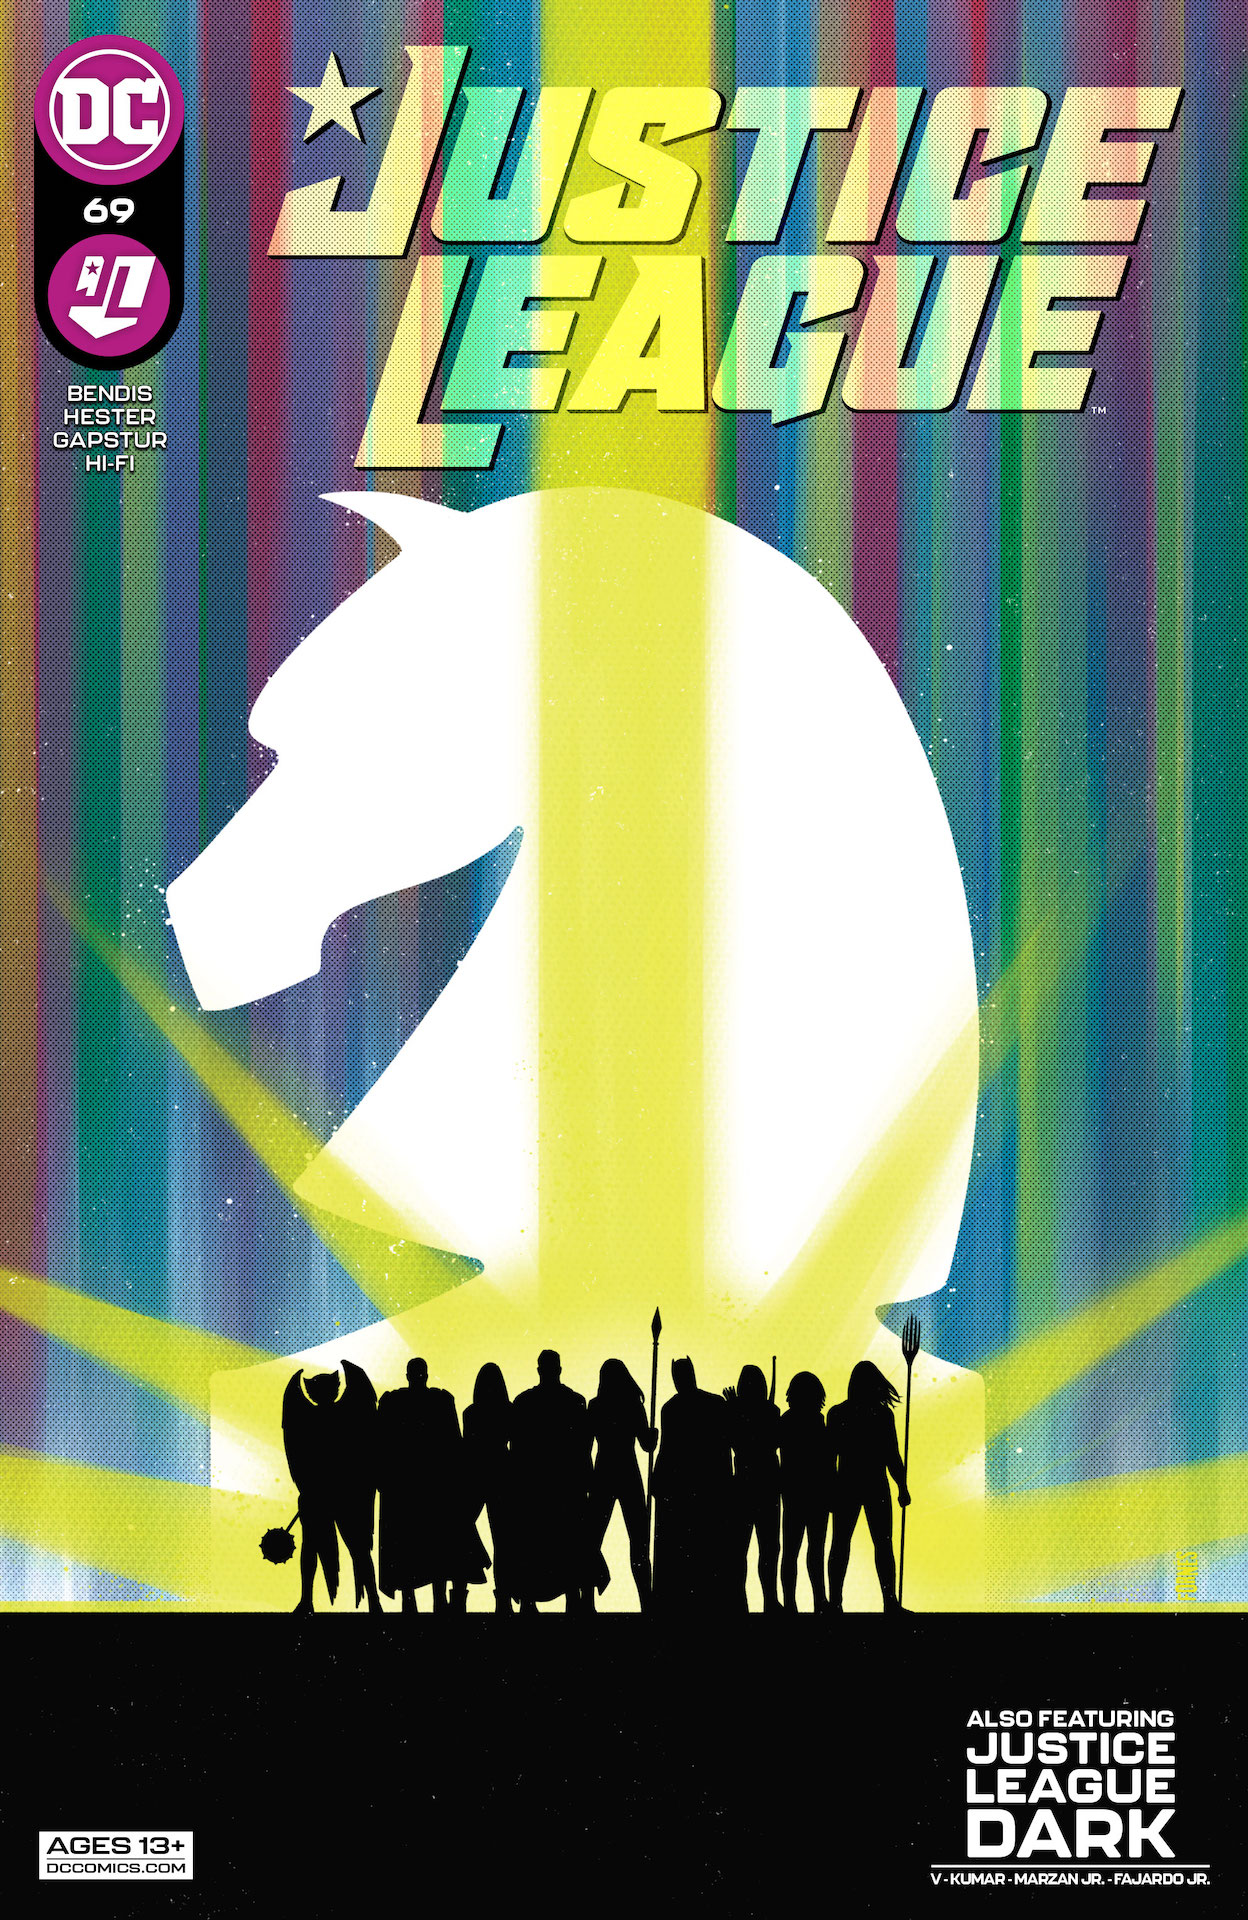 DC Preview: Justice League #69